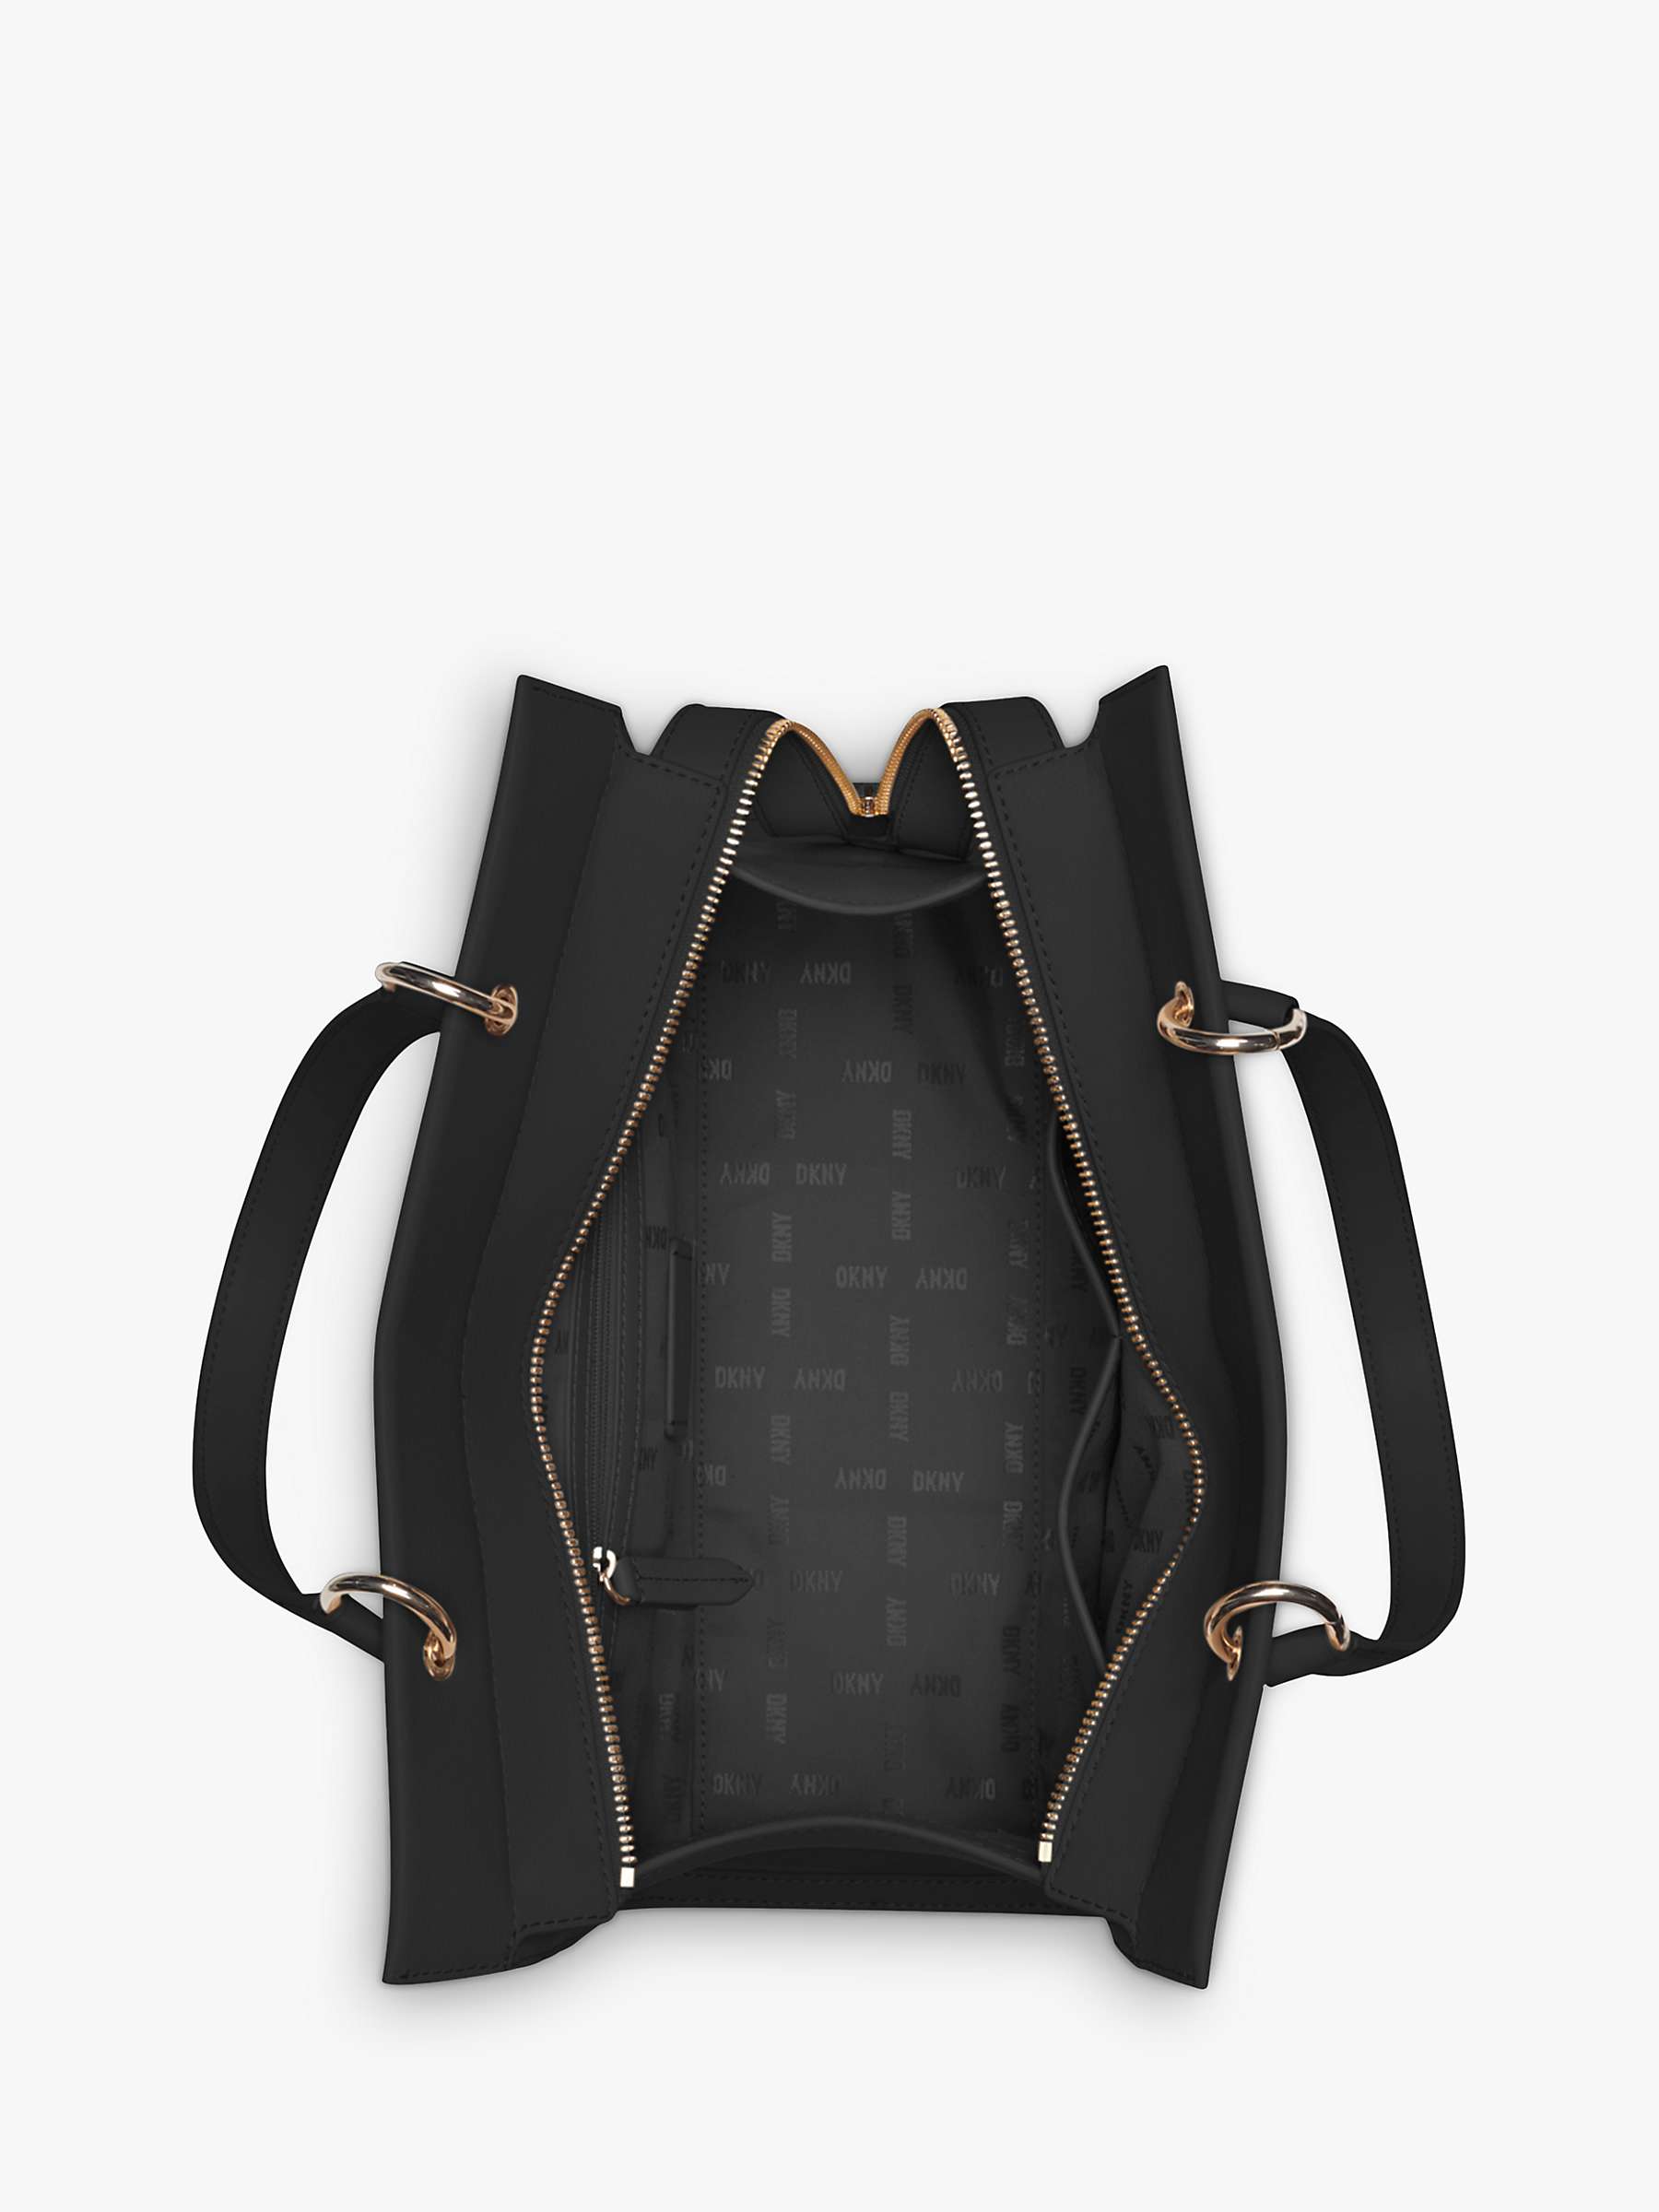 Buy DKNY Gramercy Leather Satchel Bag, Black Online at johnlewis.com